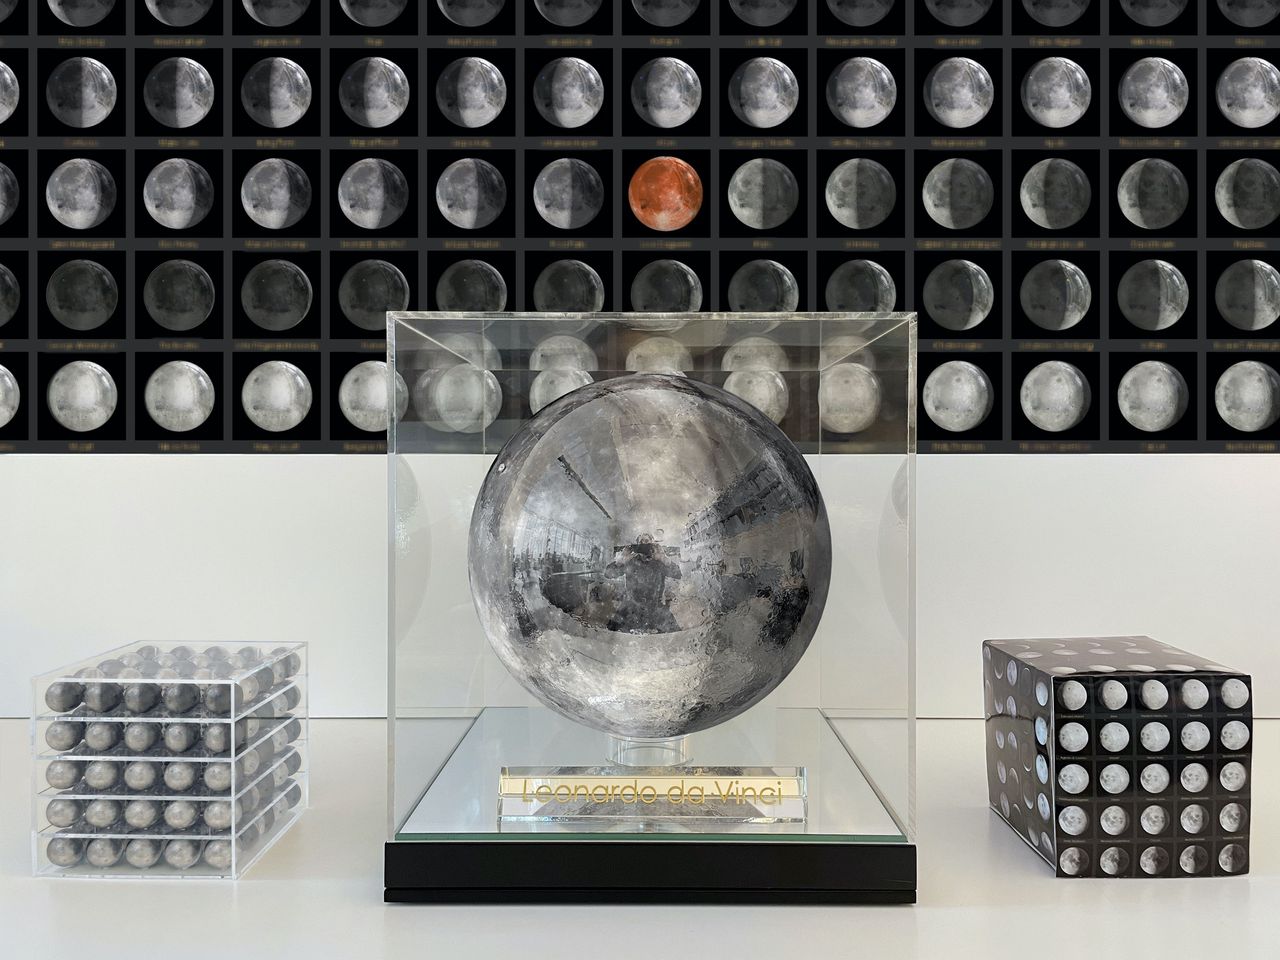 Jeff Koons, ‘Moon Phases Leonardo da Vinci’ met links de 125 kleine globes die naar de maan gaan.